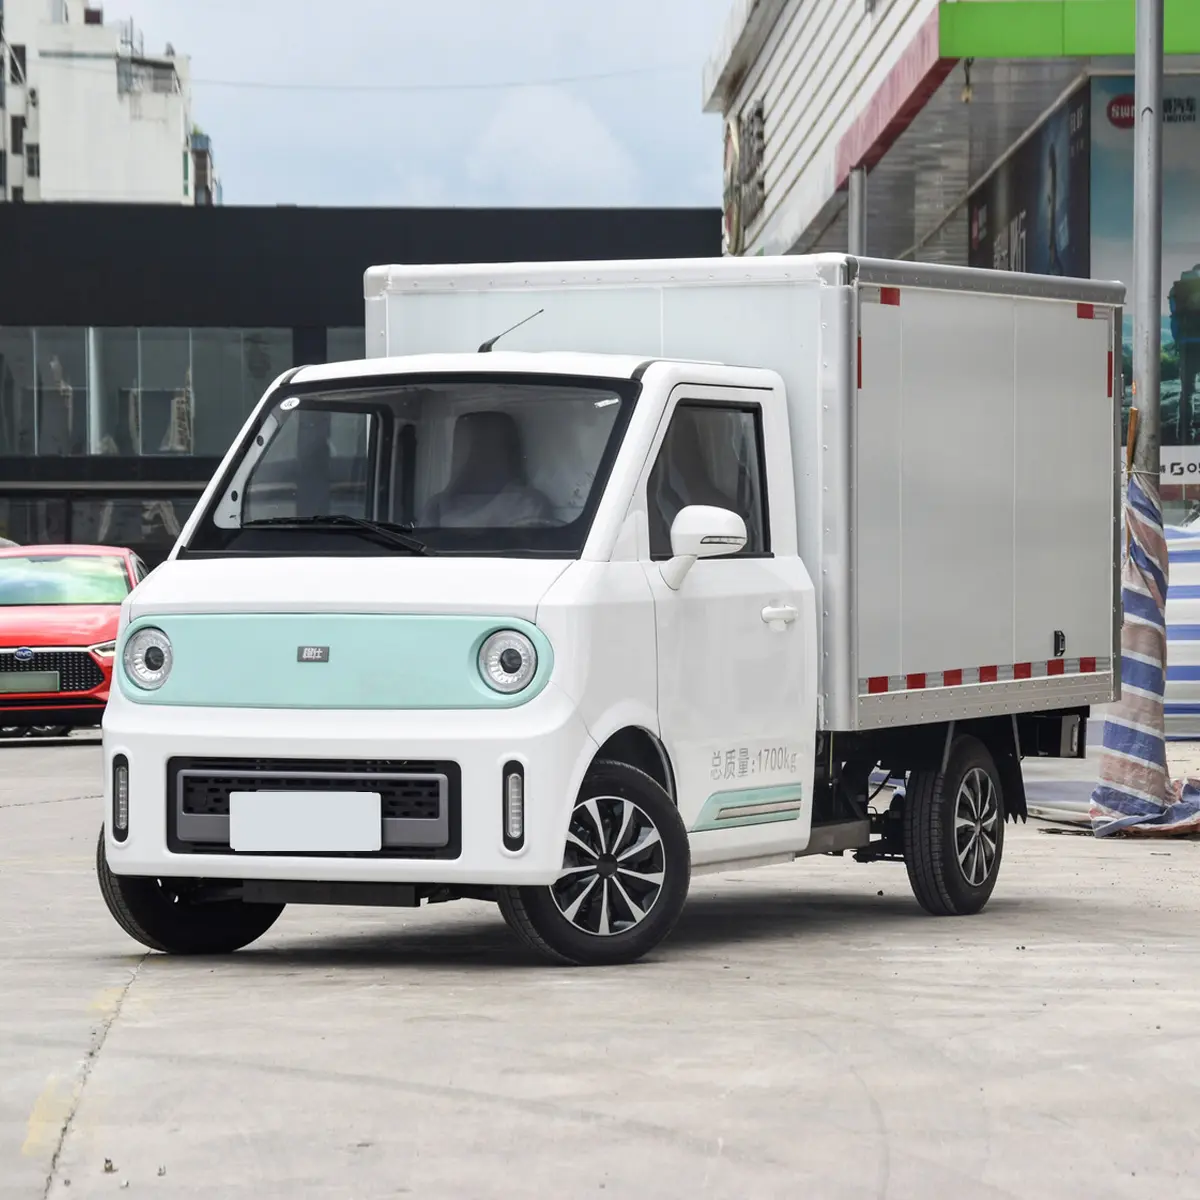 2022 Chengshi 01 camión de cadena de frío Furgonetas ligeras Edición Rwd Coches usados Coches eléctricos para adultos carro electrico Ev Coches fabricados en China